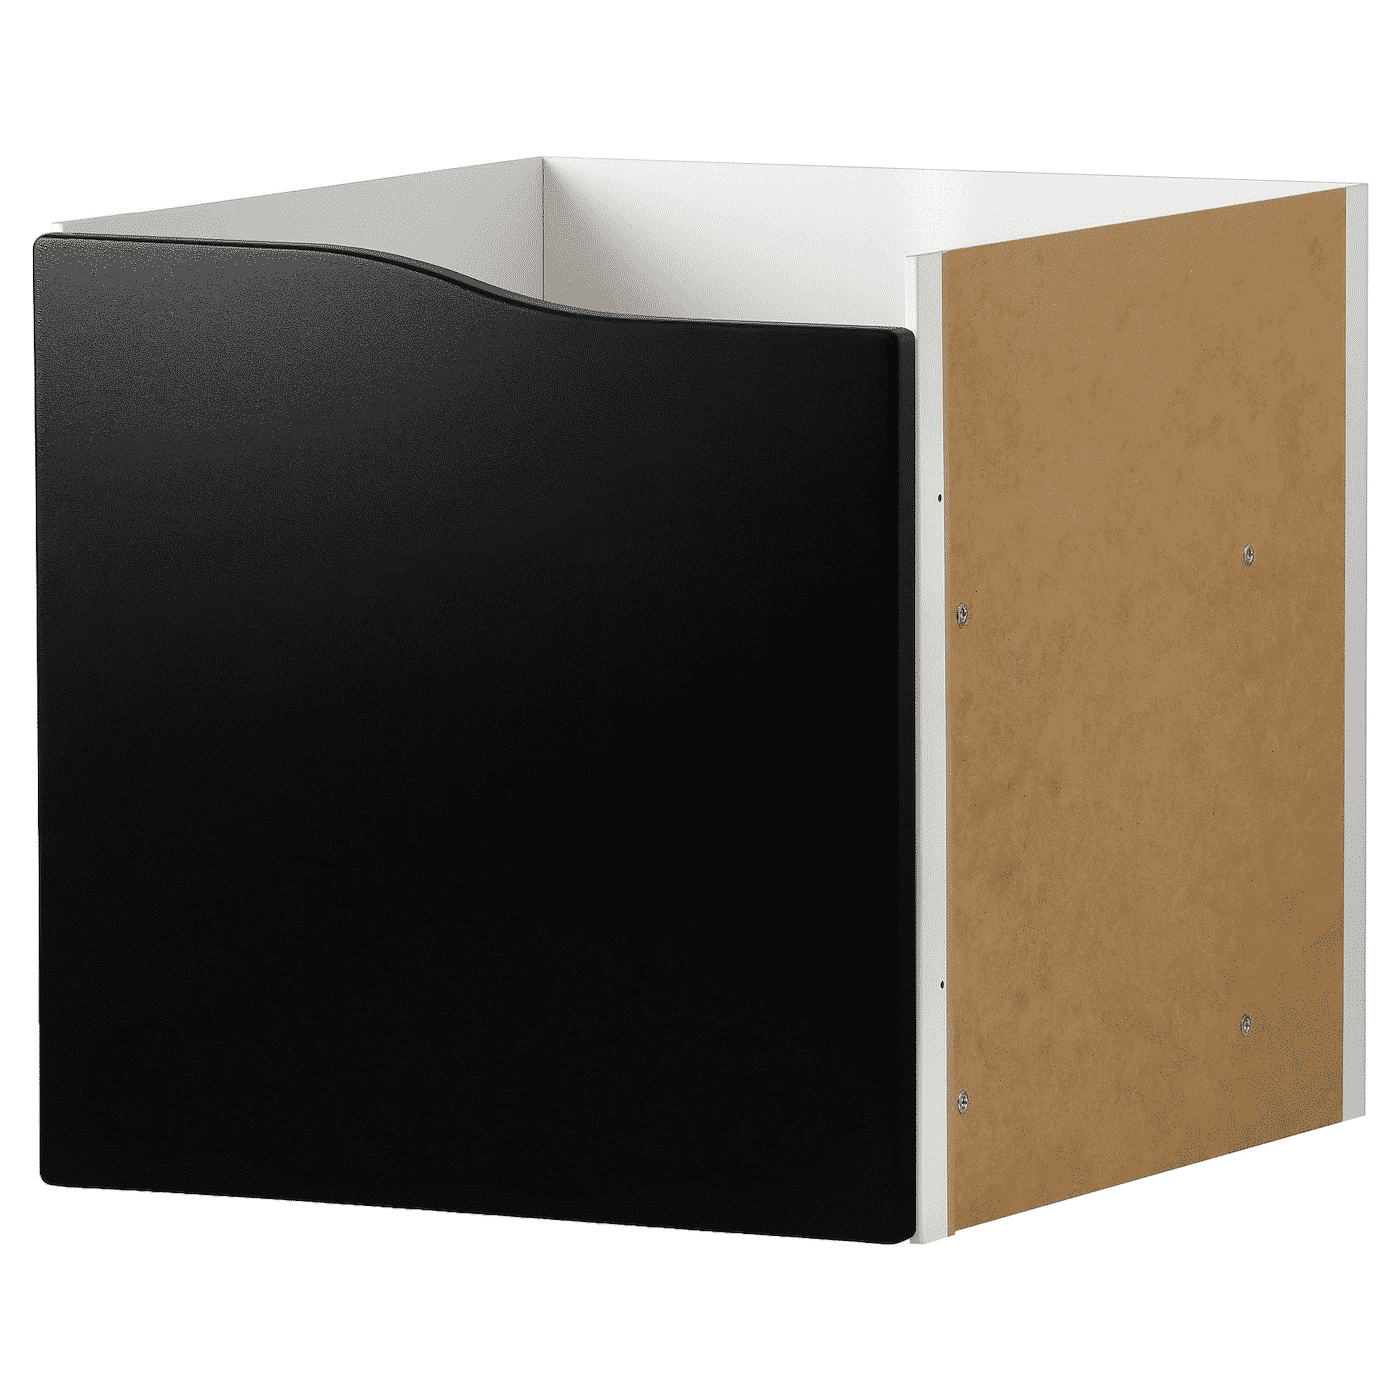 KALLAX Insert with door, blackboard surface